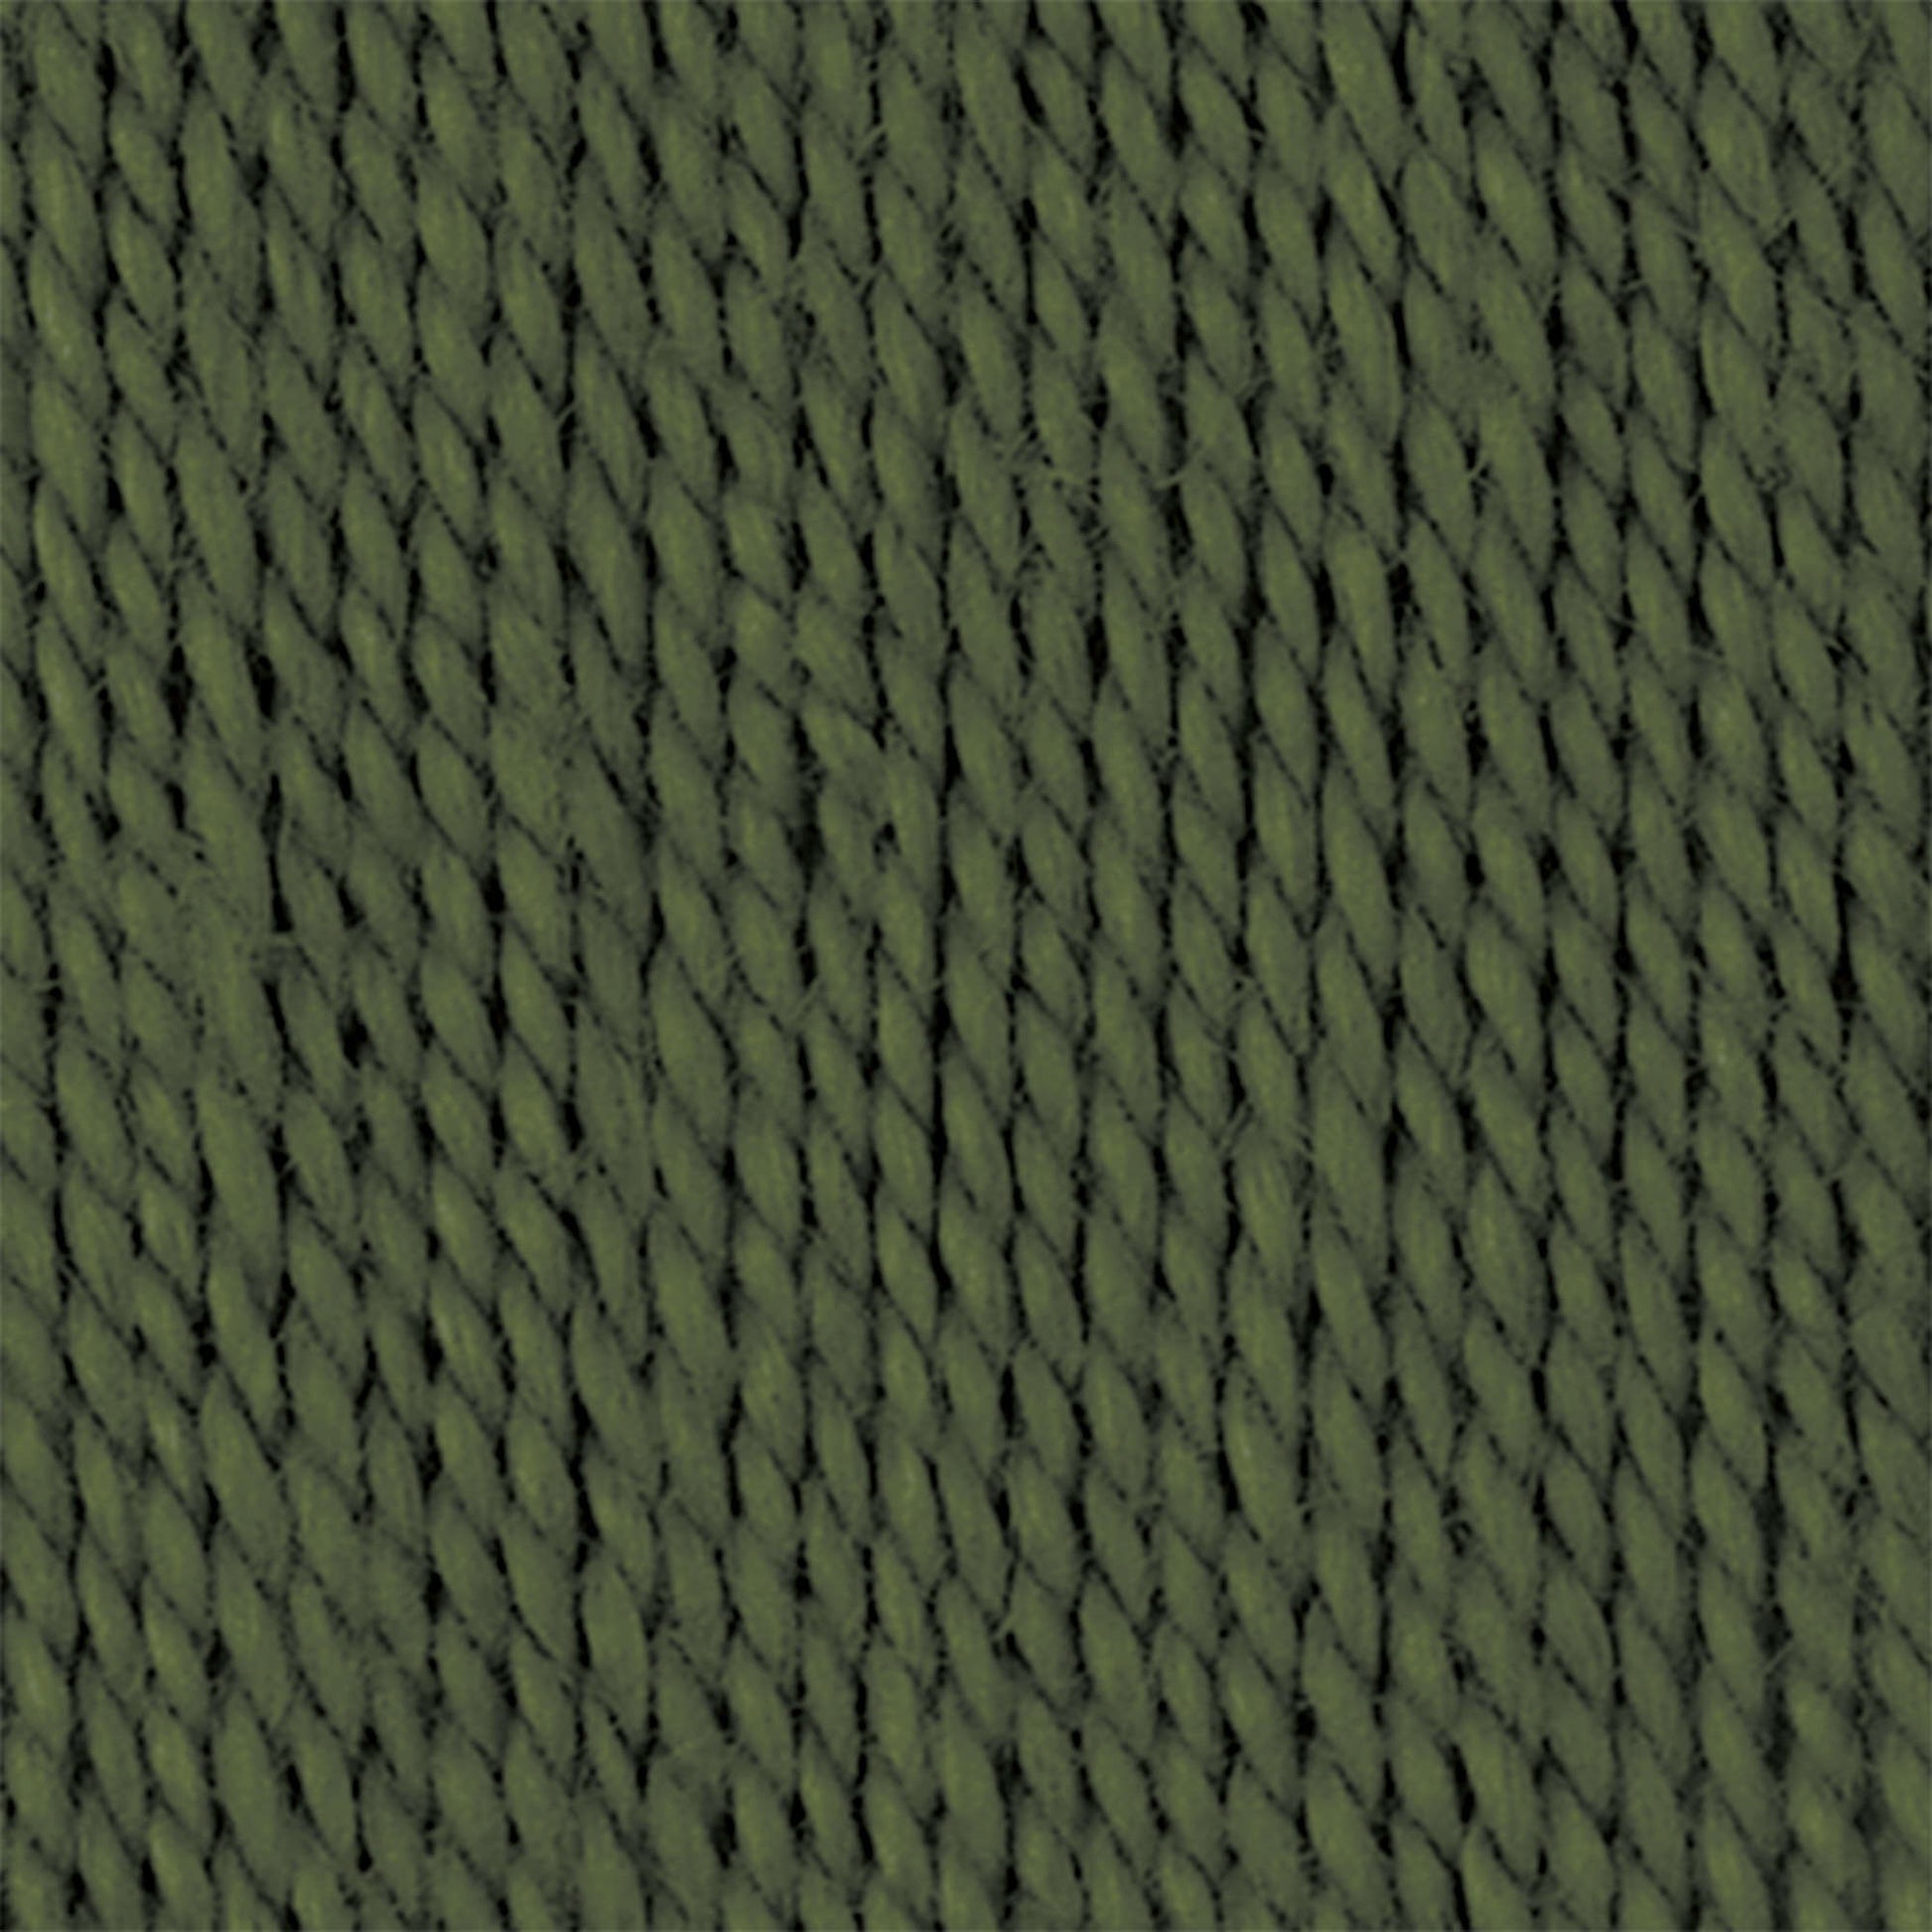 Bernat Handicrafter Crochet Thread - Discontinued Evergreen